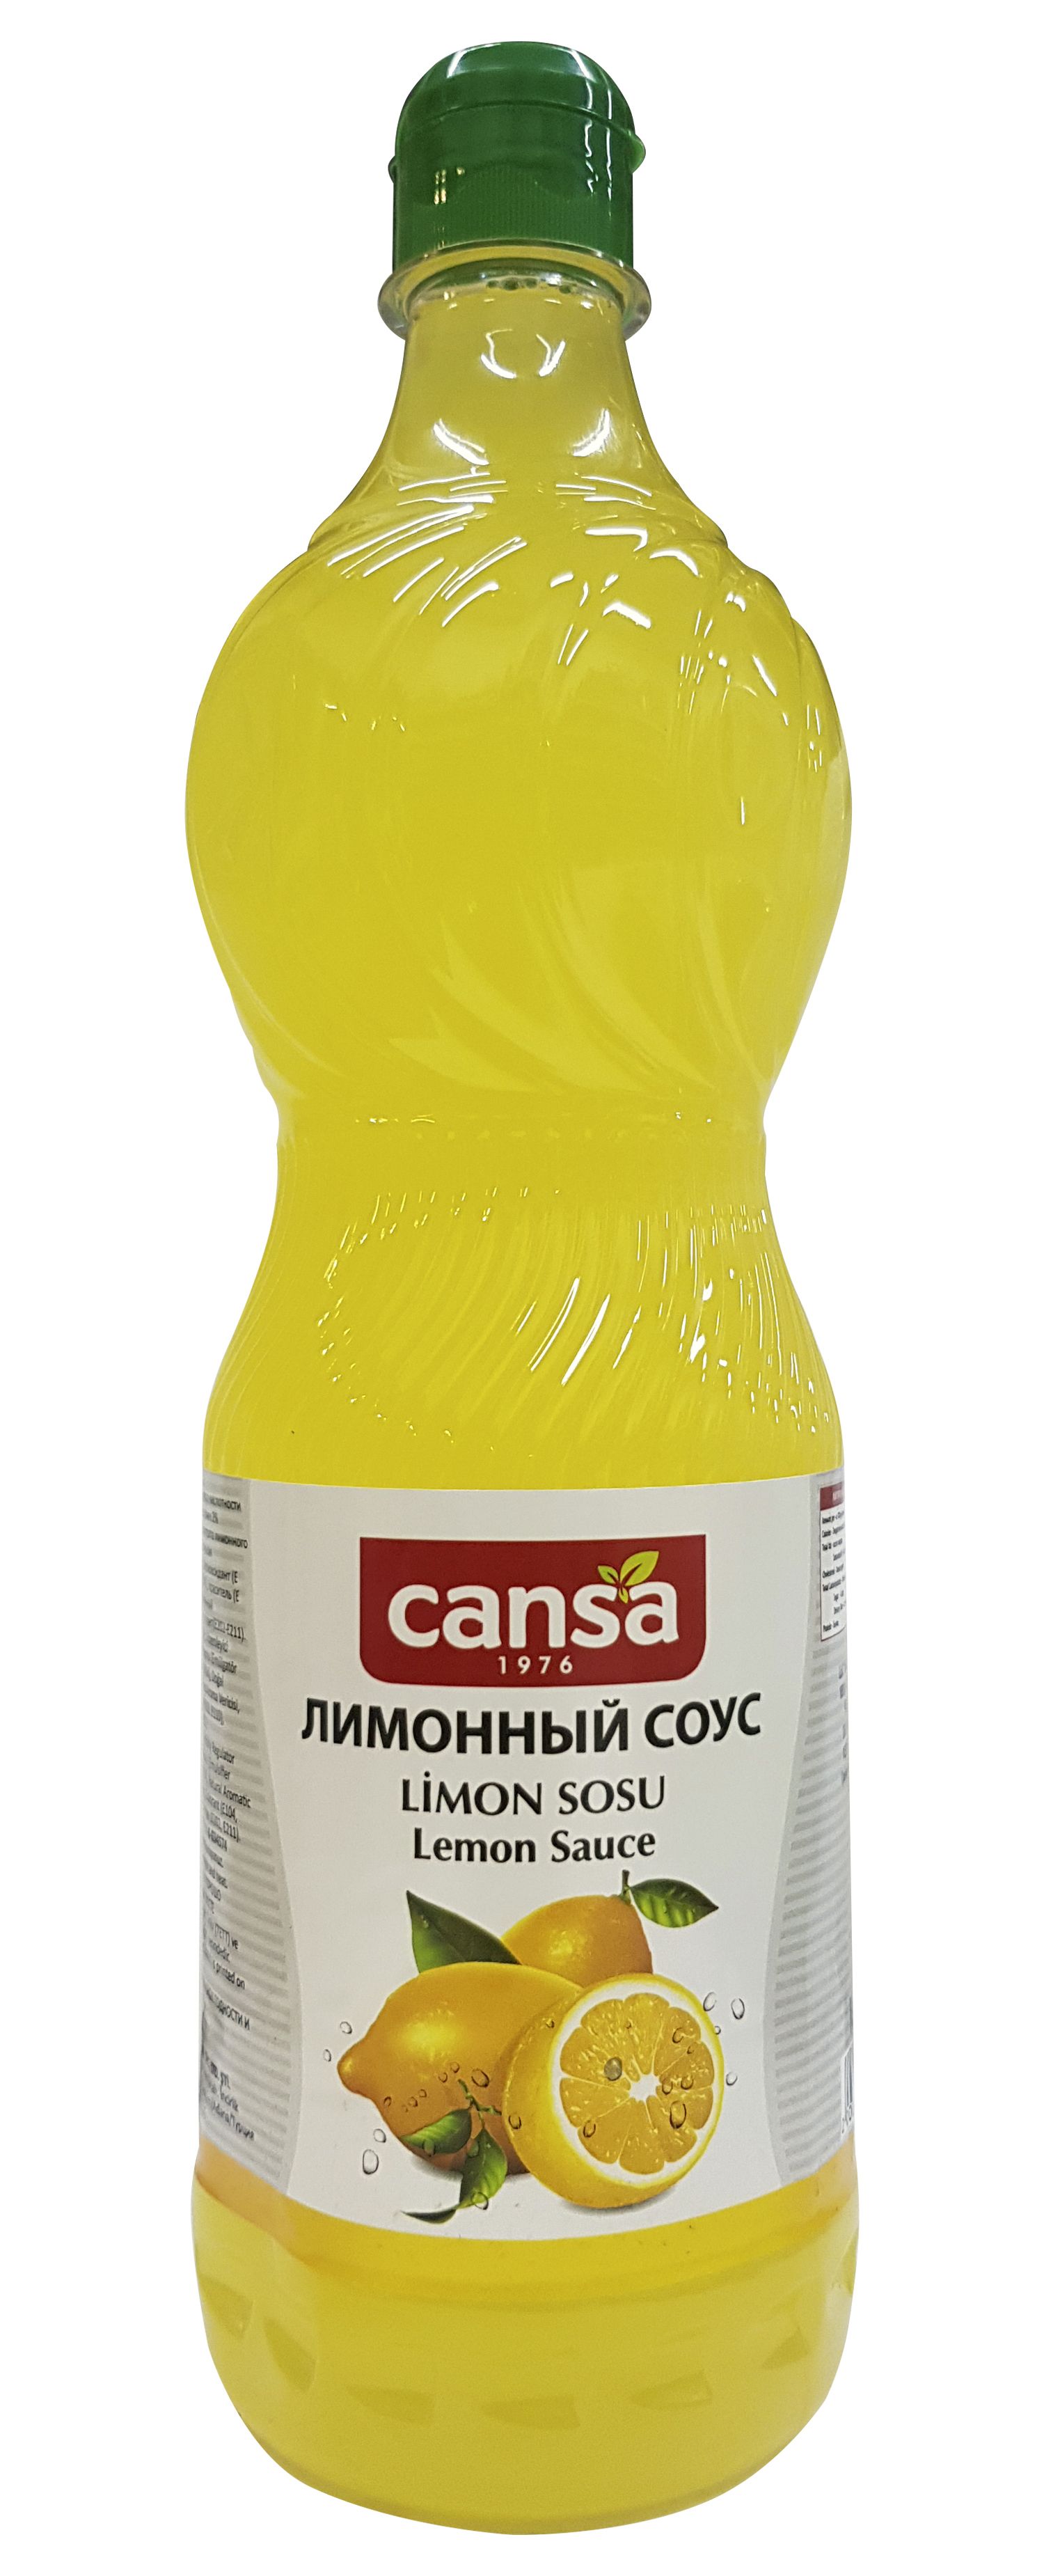 Турецкийлимонныйсоус,"Cansa",LimonSosu,1000мл.